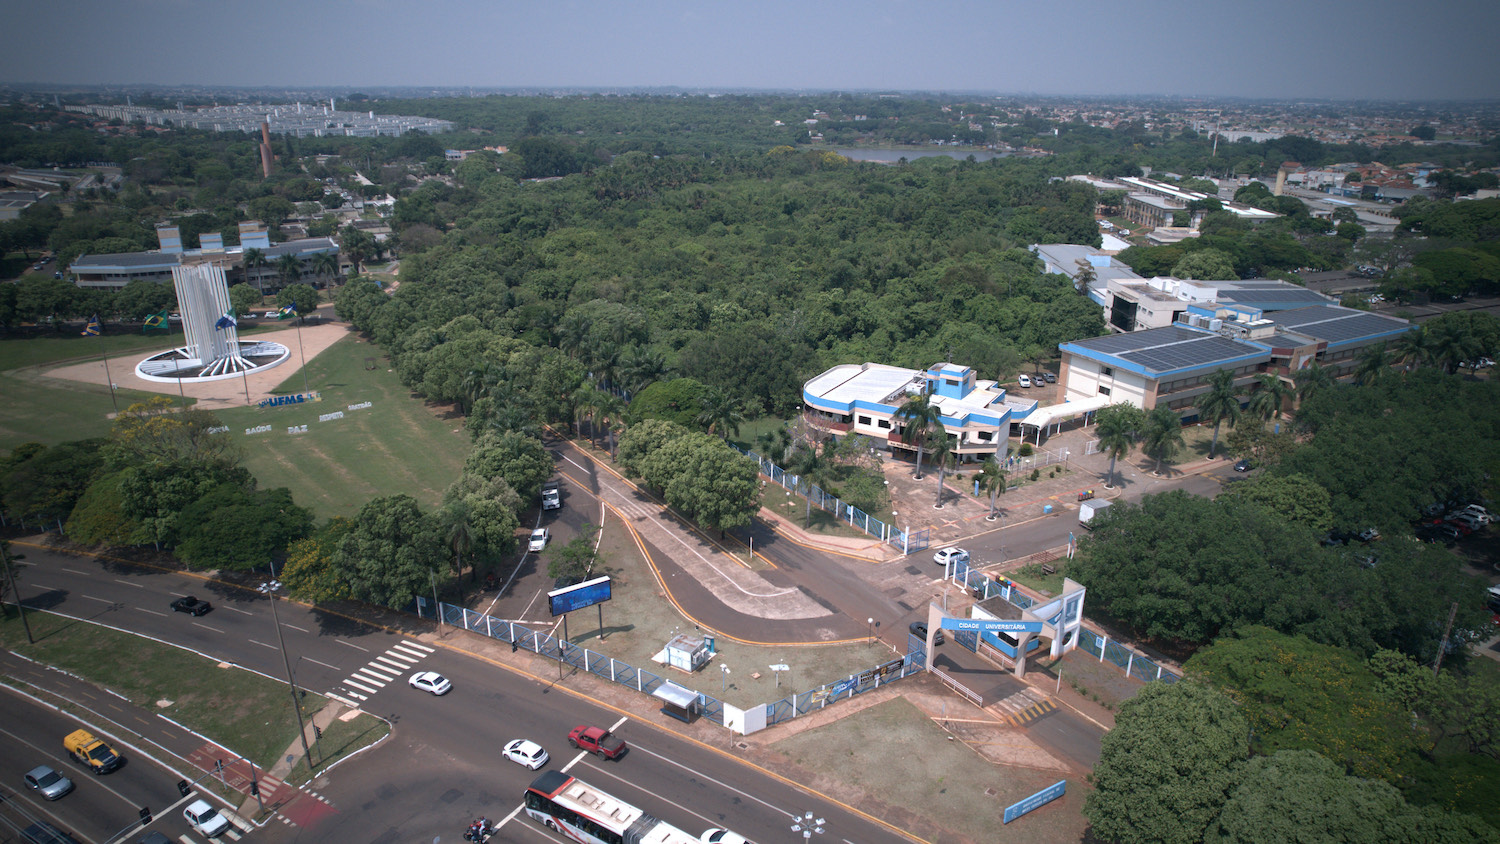 Aerial view of Universidade de Mato Grosso do Sul campus